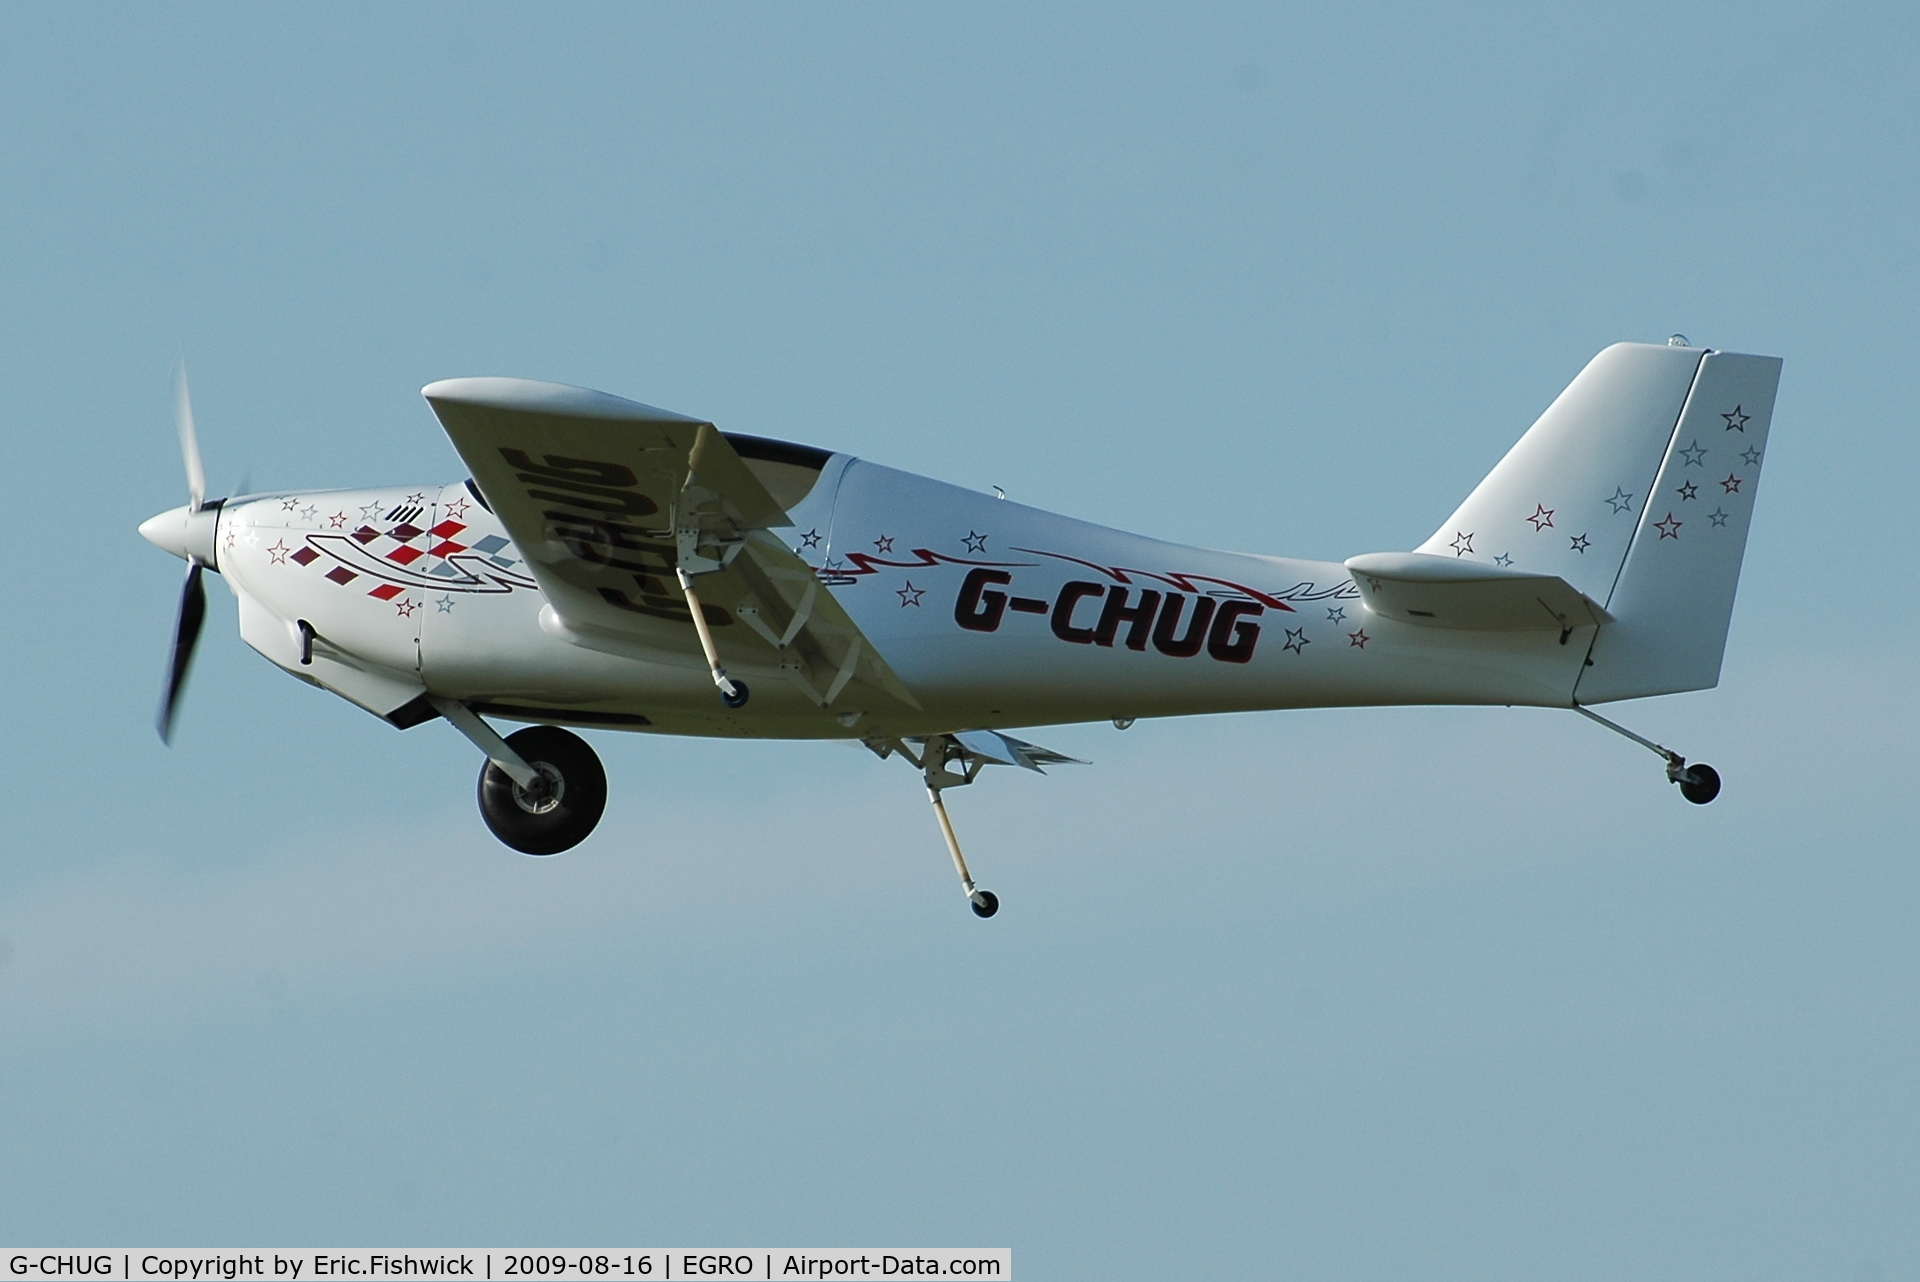 G-CHUG, 2002 Europa Monowheel C/N PFA 247-12960, G-CHUG at Heart Air Display, Rougham Airfield Aug 09